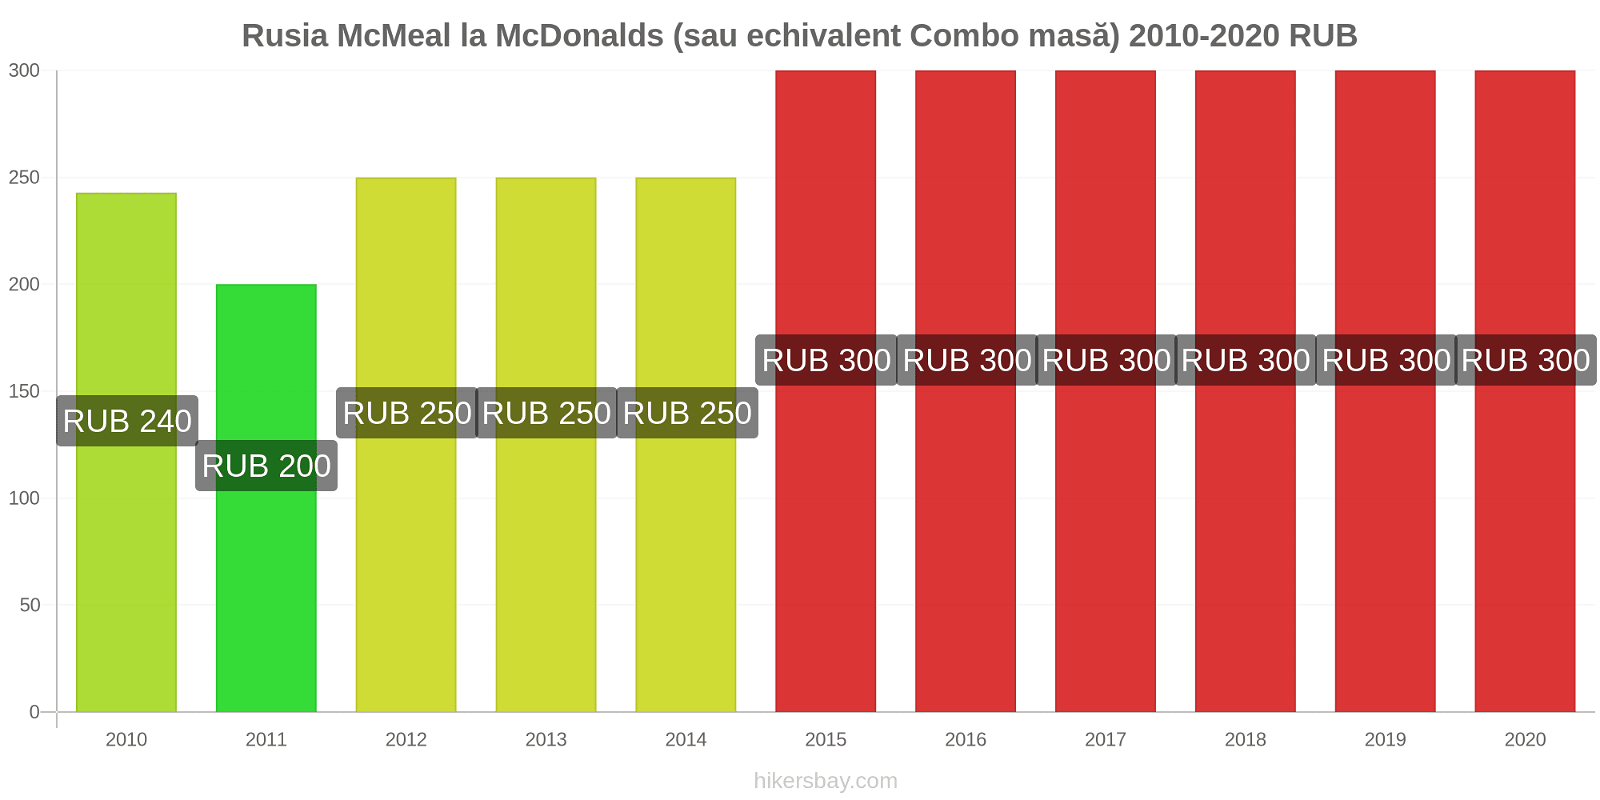 Rusia modificări de preț McMeal la McDonalds (sau echivalent Combo masă) hikersbay.com